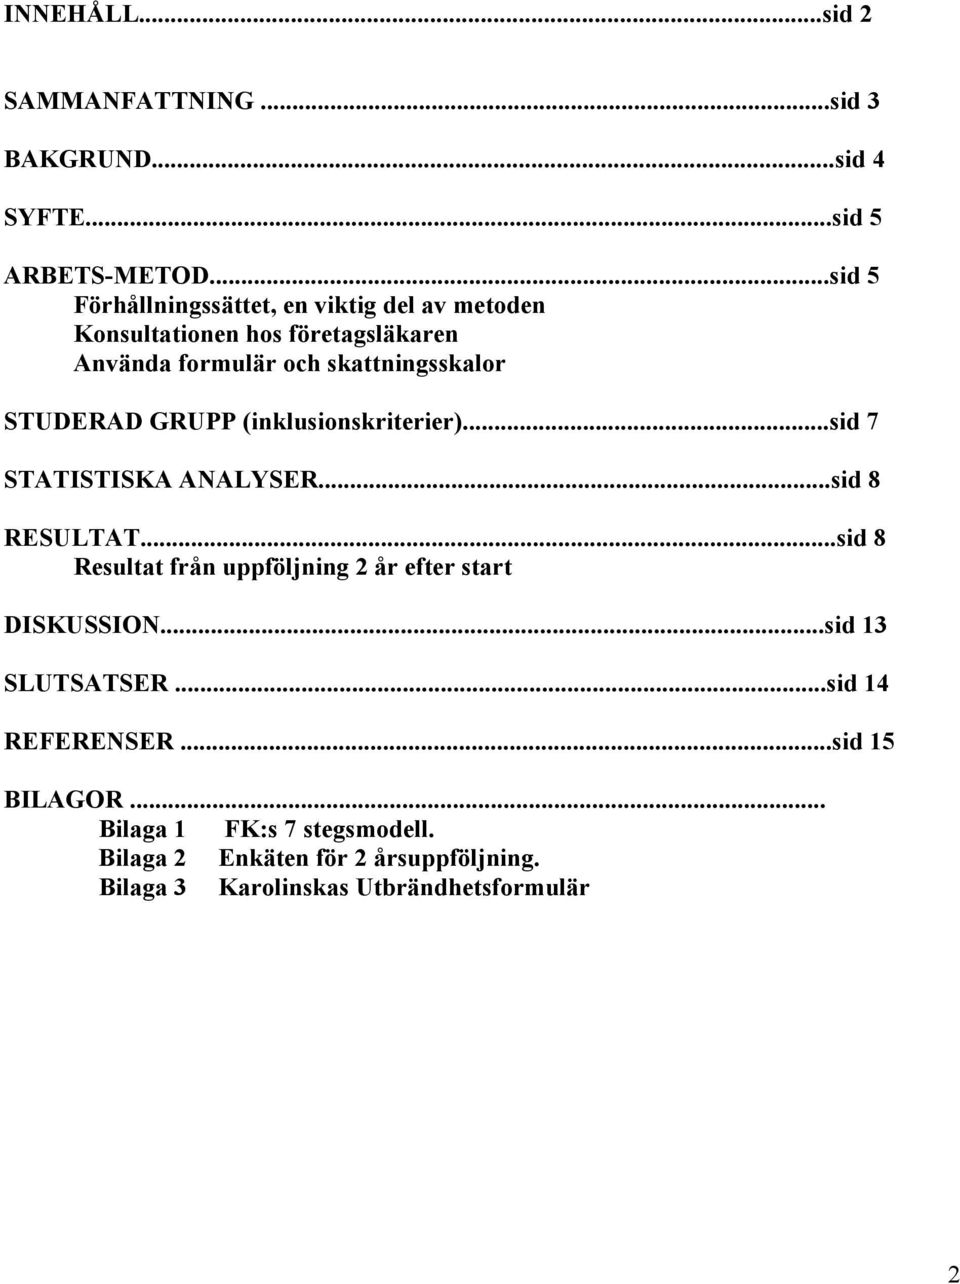 STUDERAD GRUPP (inklusionskriterier)...sid 7 STATISTISKA ANALYSER...sid 8 RESULTAT.